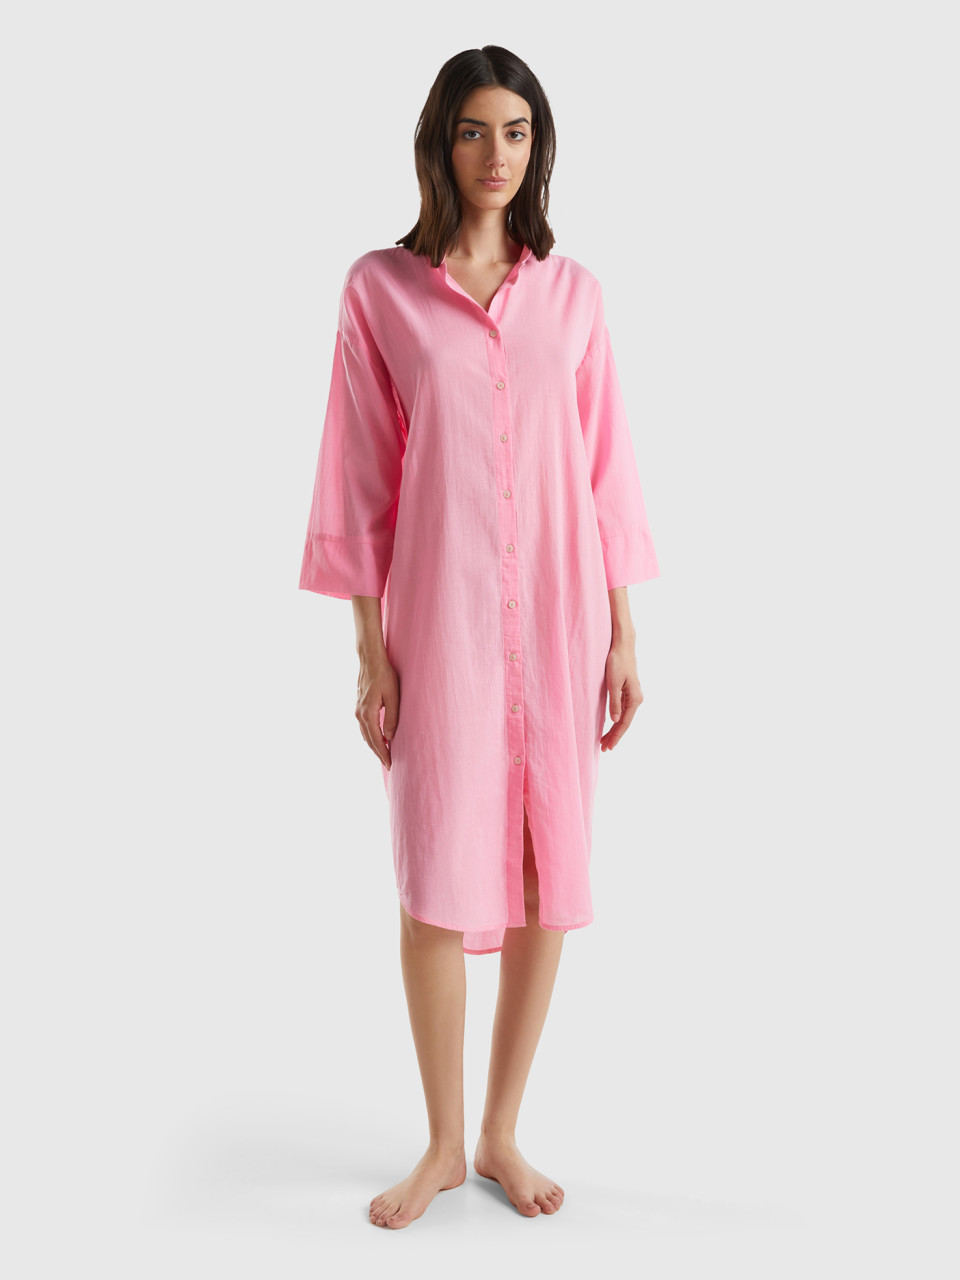 Benetton, Shirt-style Dress, Pink, Women